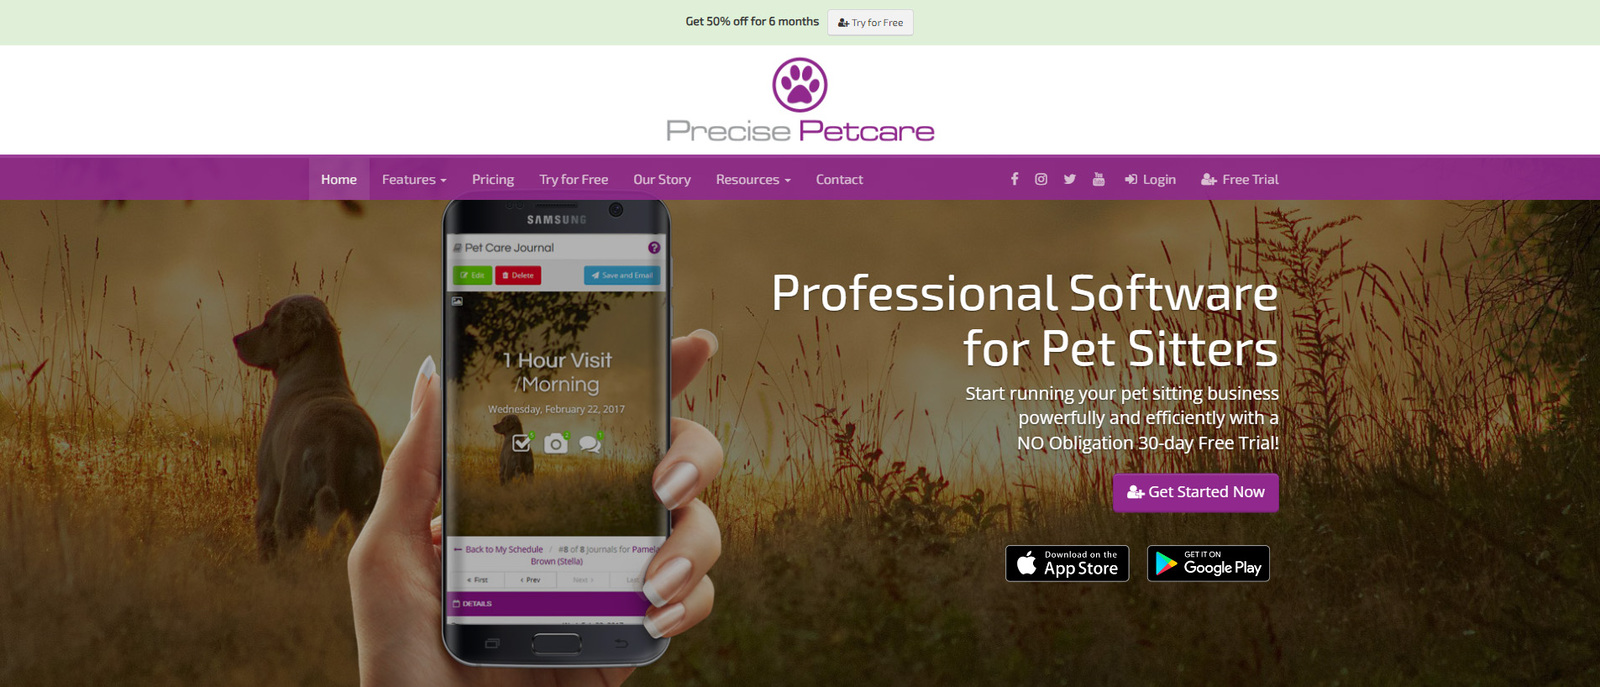 Immagine di Precise Petcare, una delle migliori opzioni software per la cura degli animali domestici.